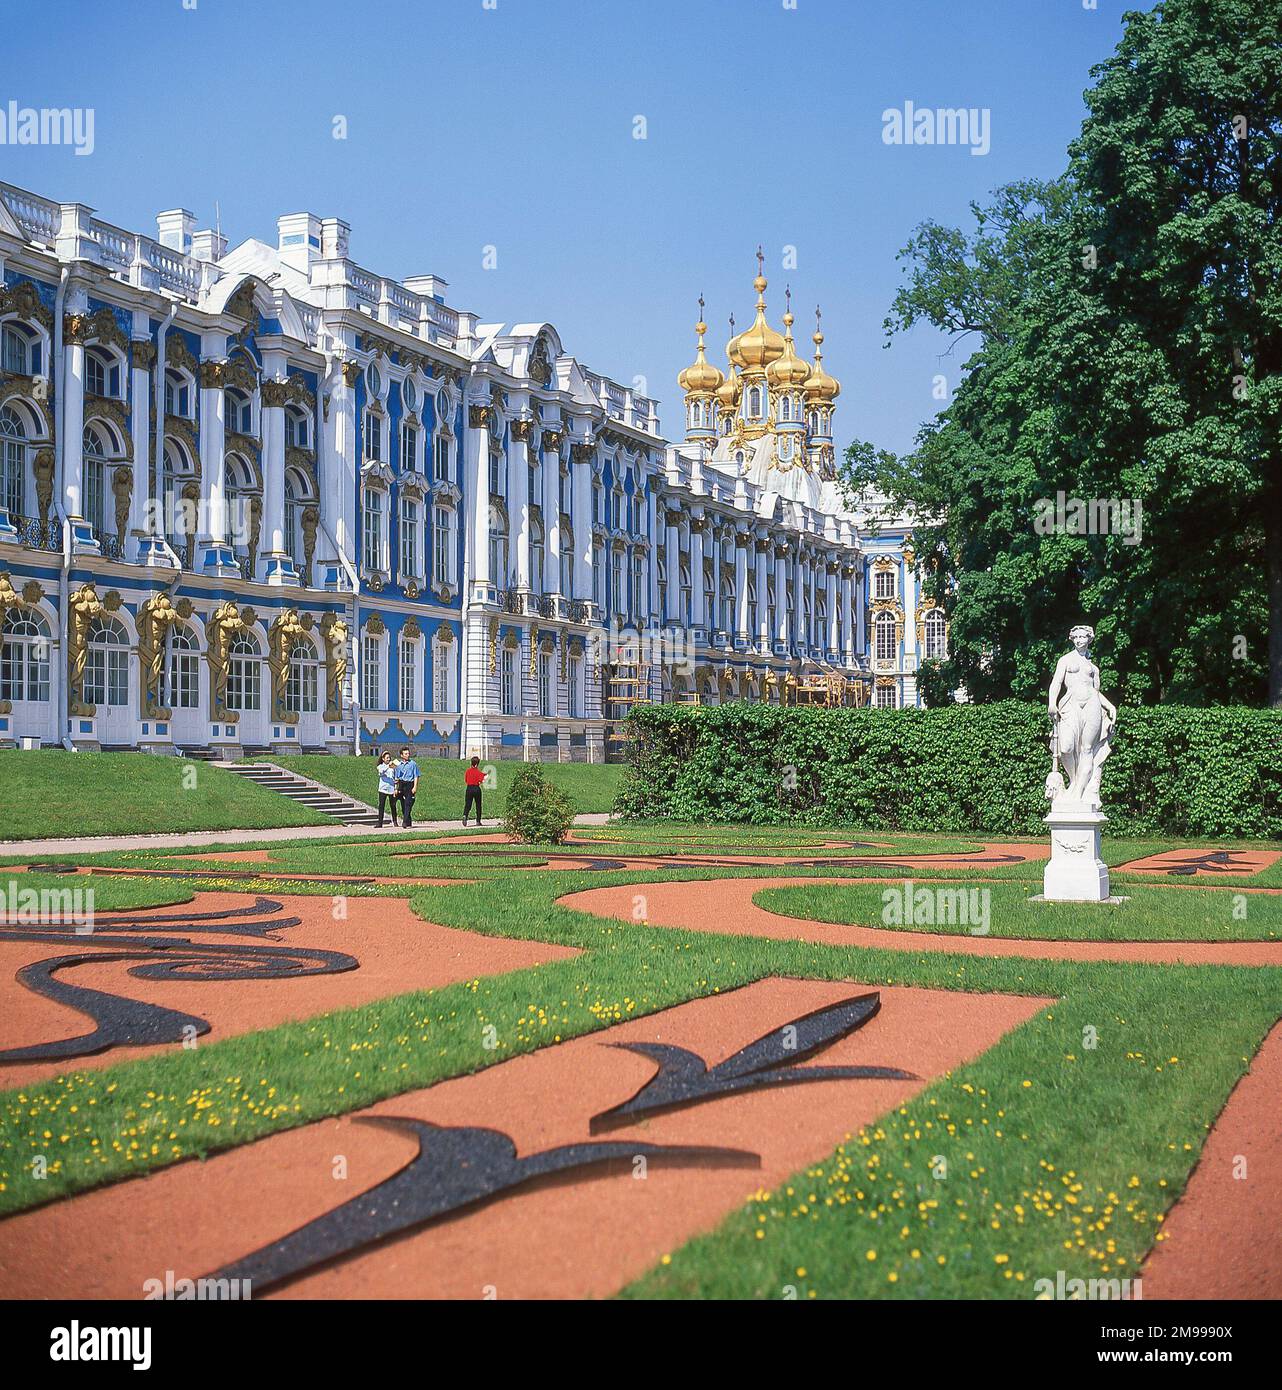 Blick auf den Palast und die Gärten, den Katharinenpalast, Puschkin, St. Petersburg, die nordwestliche Region, Russland Stockfoto